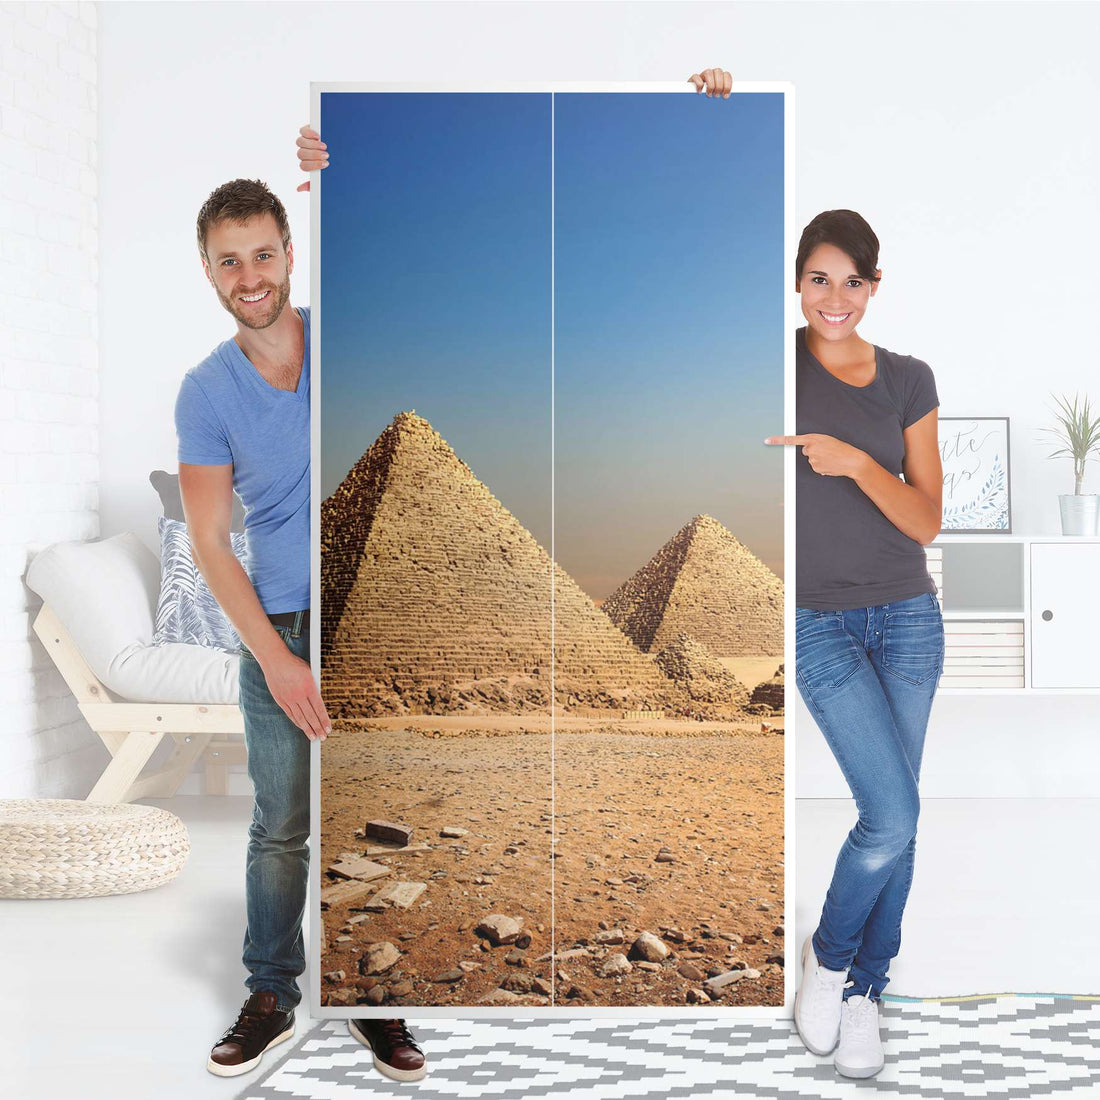 Klebefolie für Möbel Pyramids - IKEA Pax Schrank 201 cm Höhe - 2 Türen - Folie